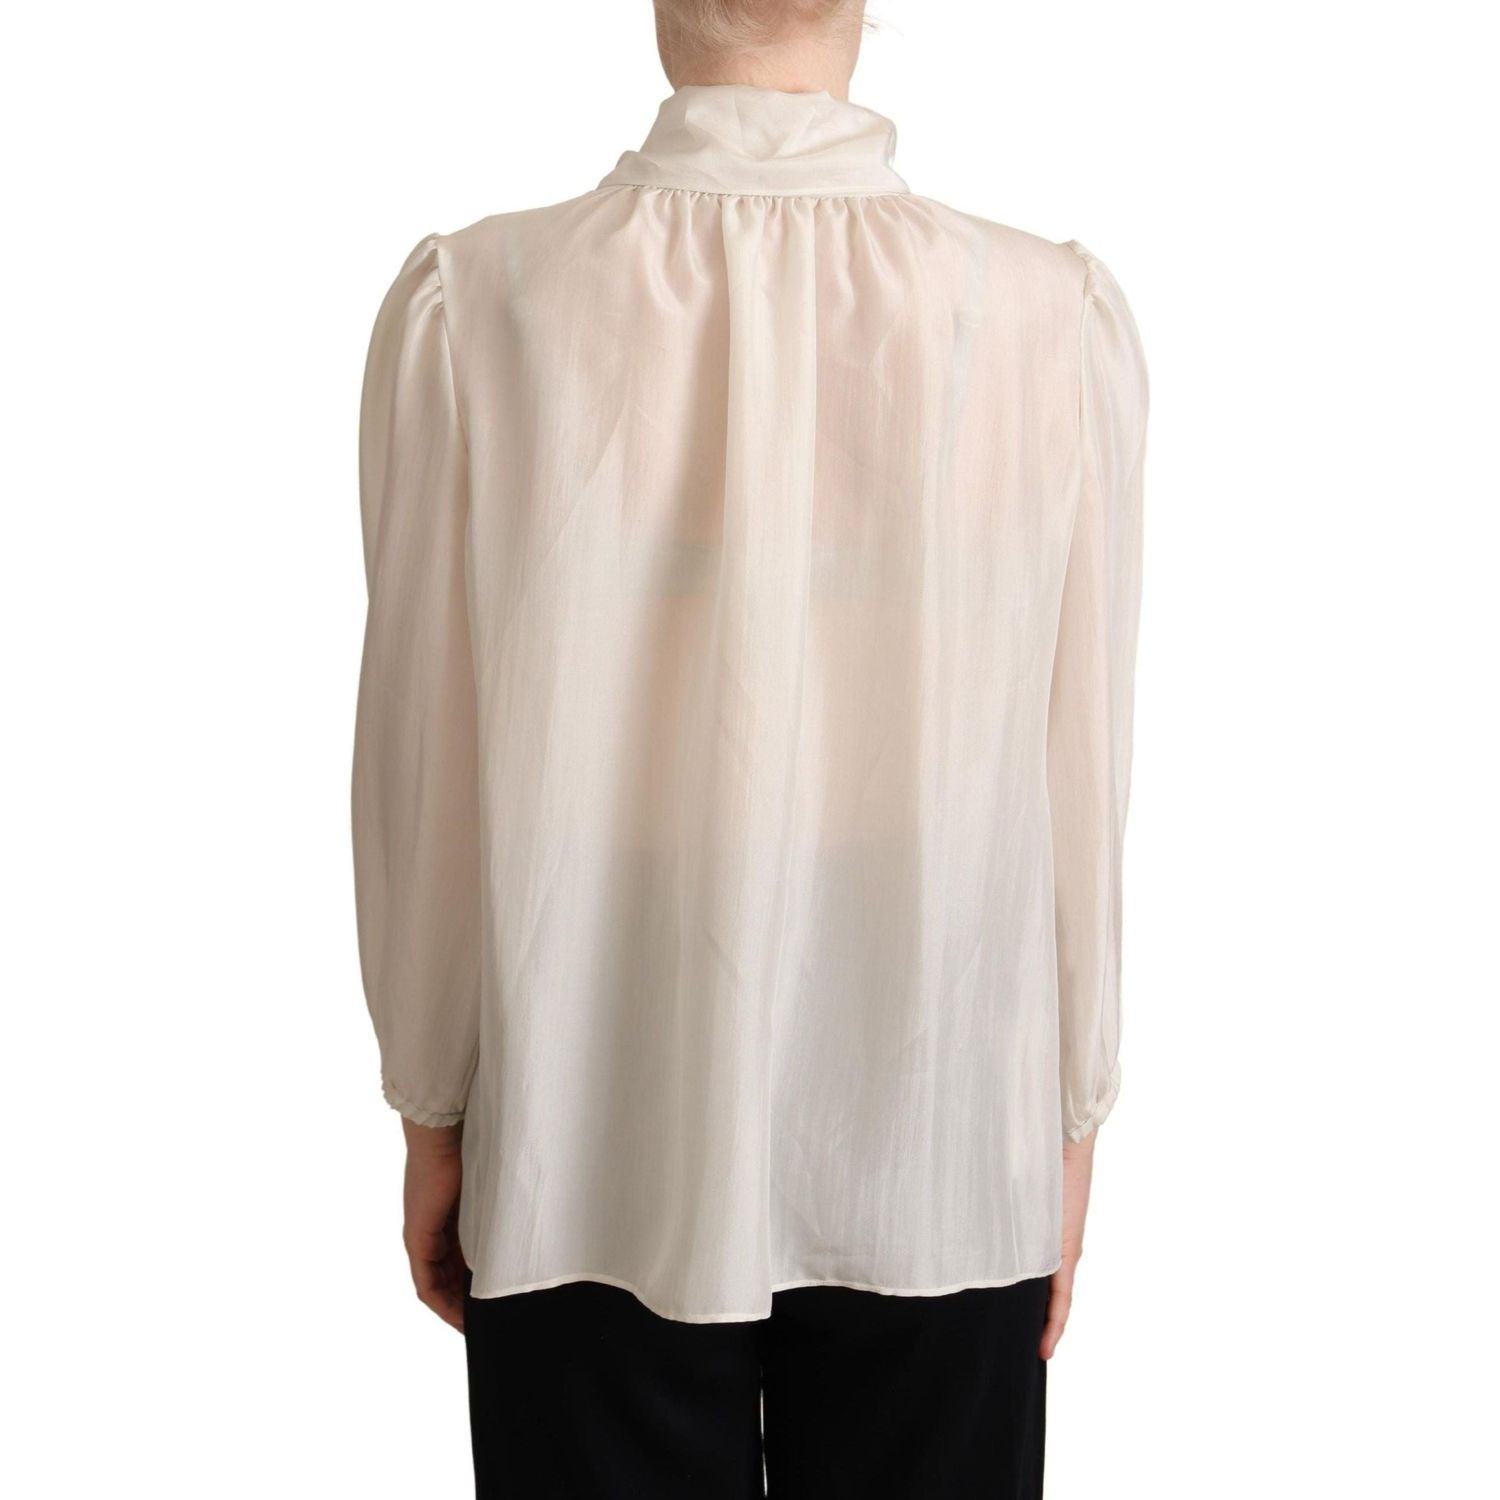 Dolce & Gabbana | Light Gray Ascot Collar Shirt Silk Blouse Top  | McRichard Designer Brands